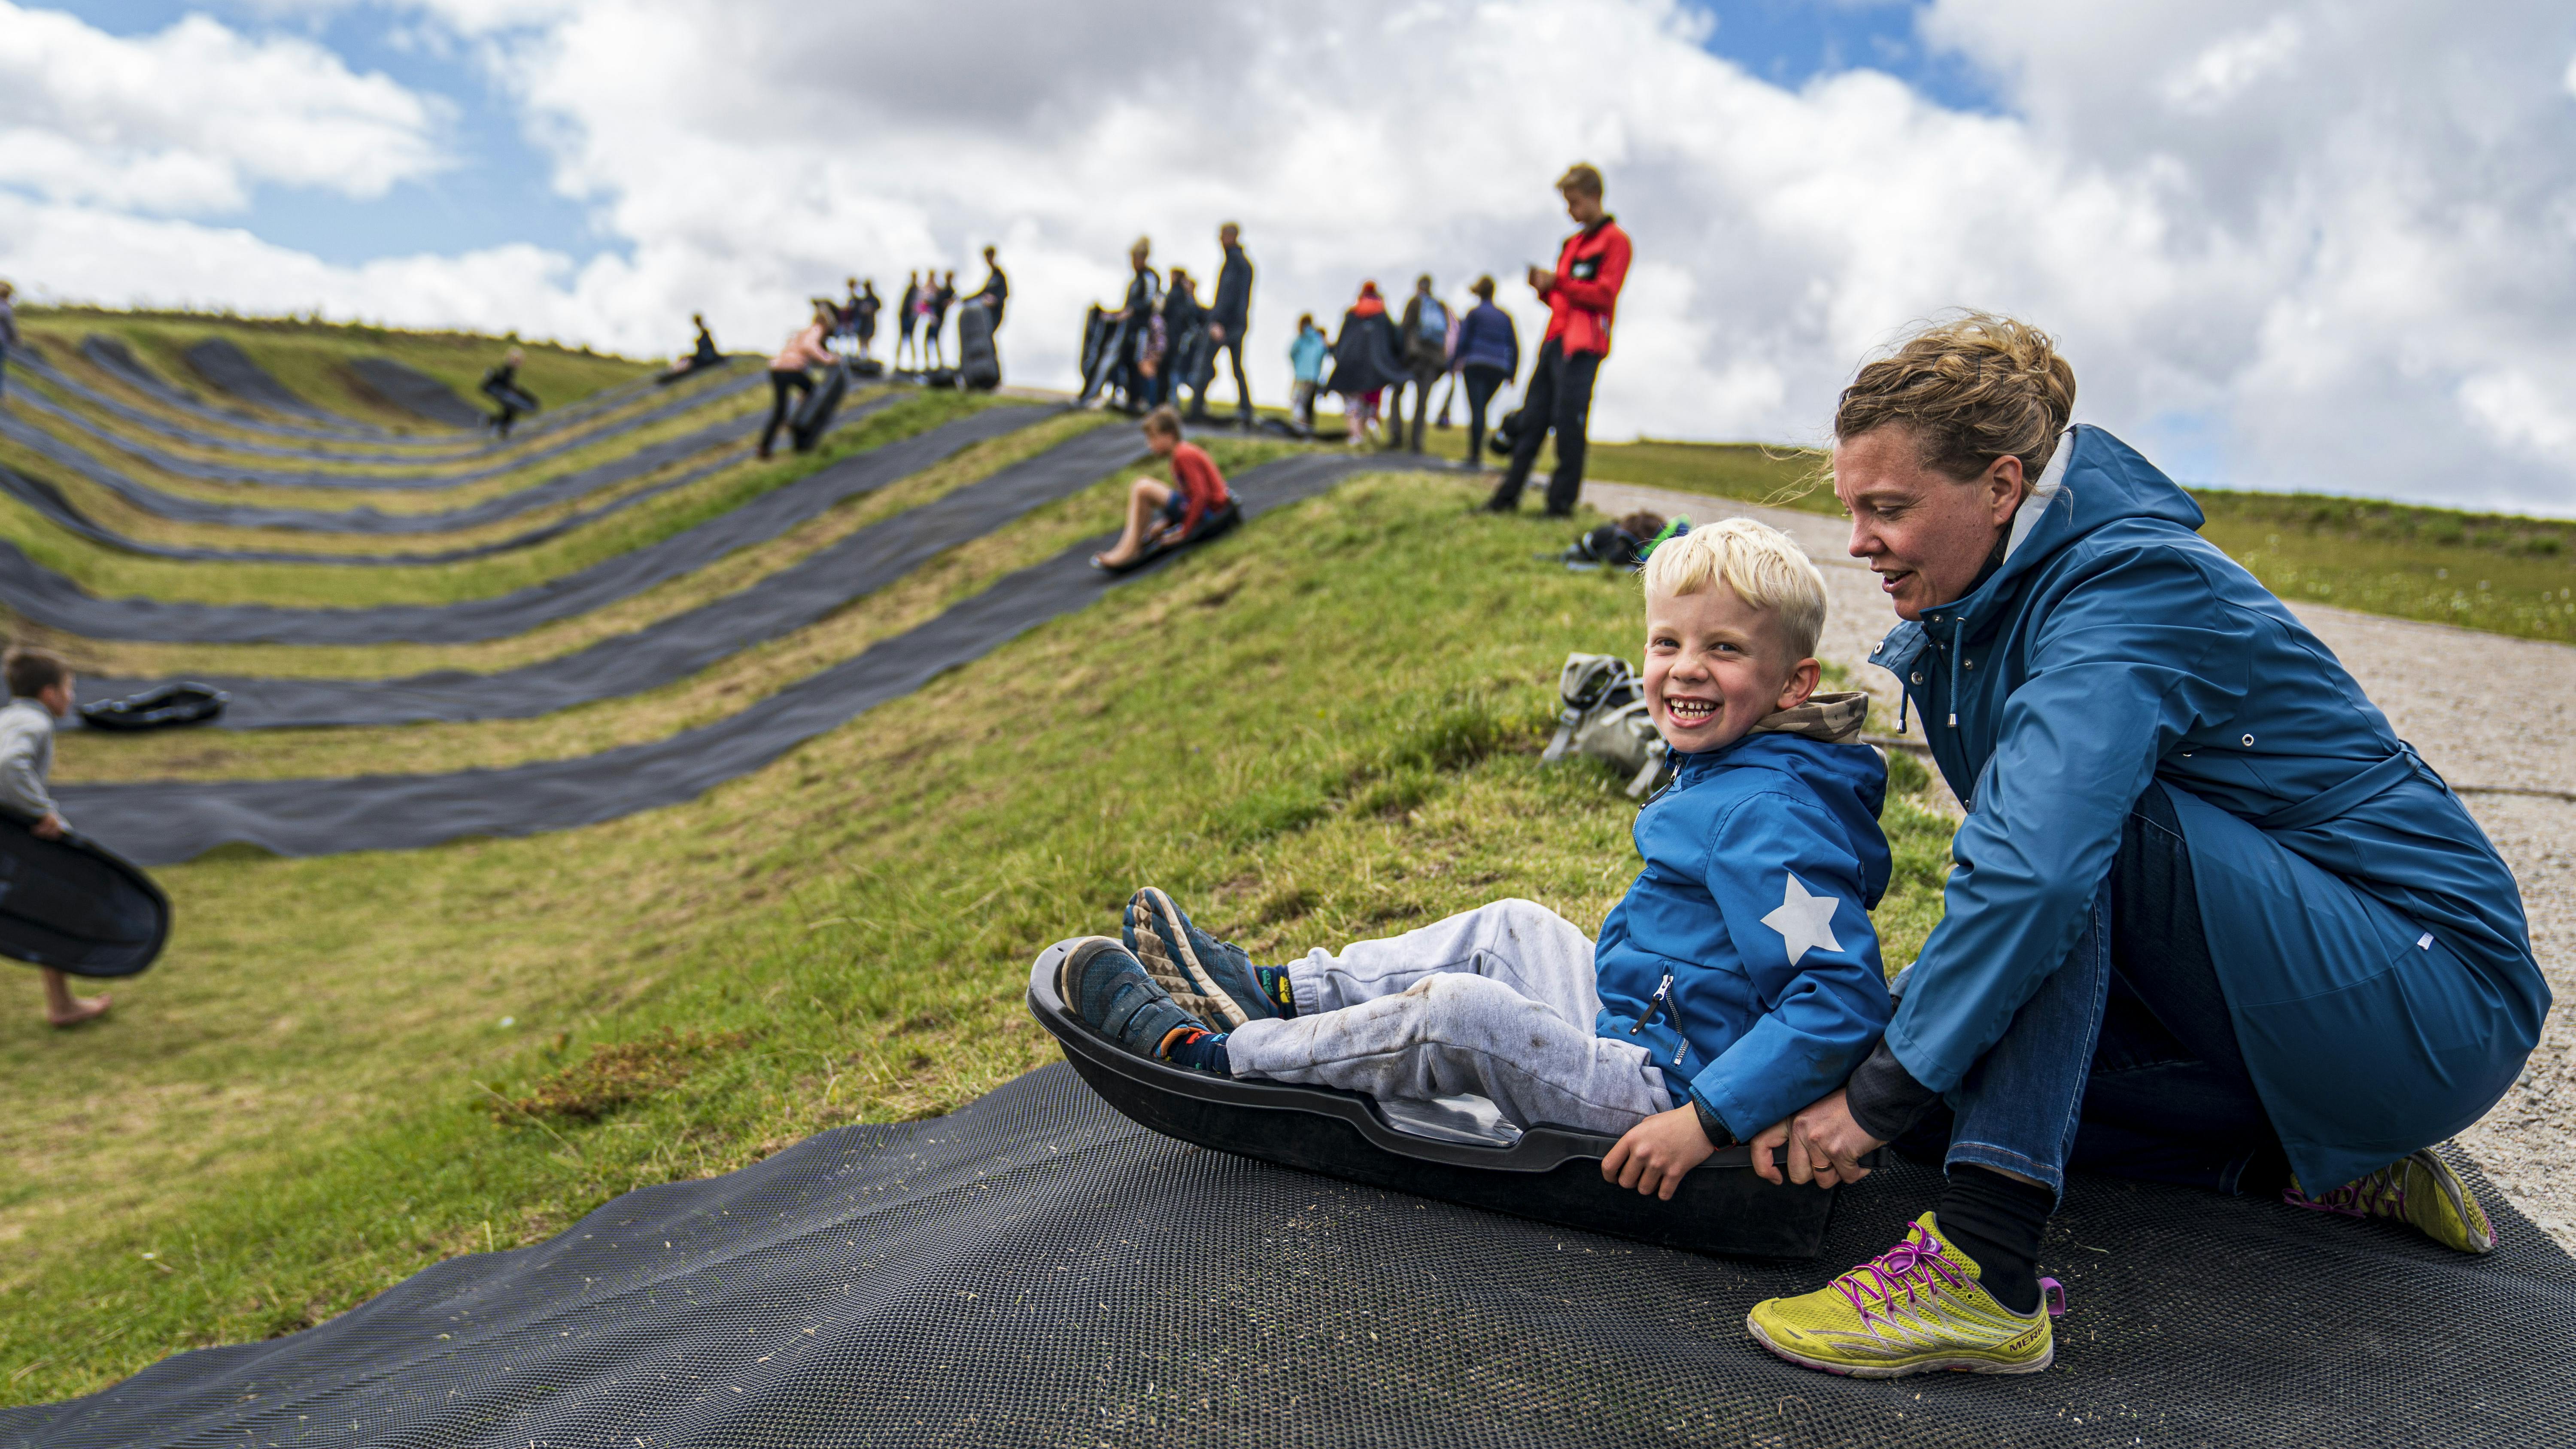 Familie Journal har besøgt Danmarks nye oplevelsescenter Naturkraft ved Ringkøbing, hvor alle aldersgrupper både kan lege og lære